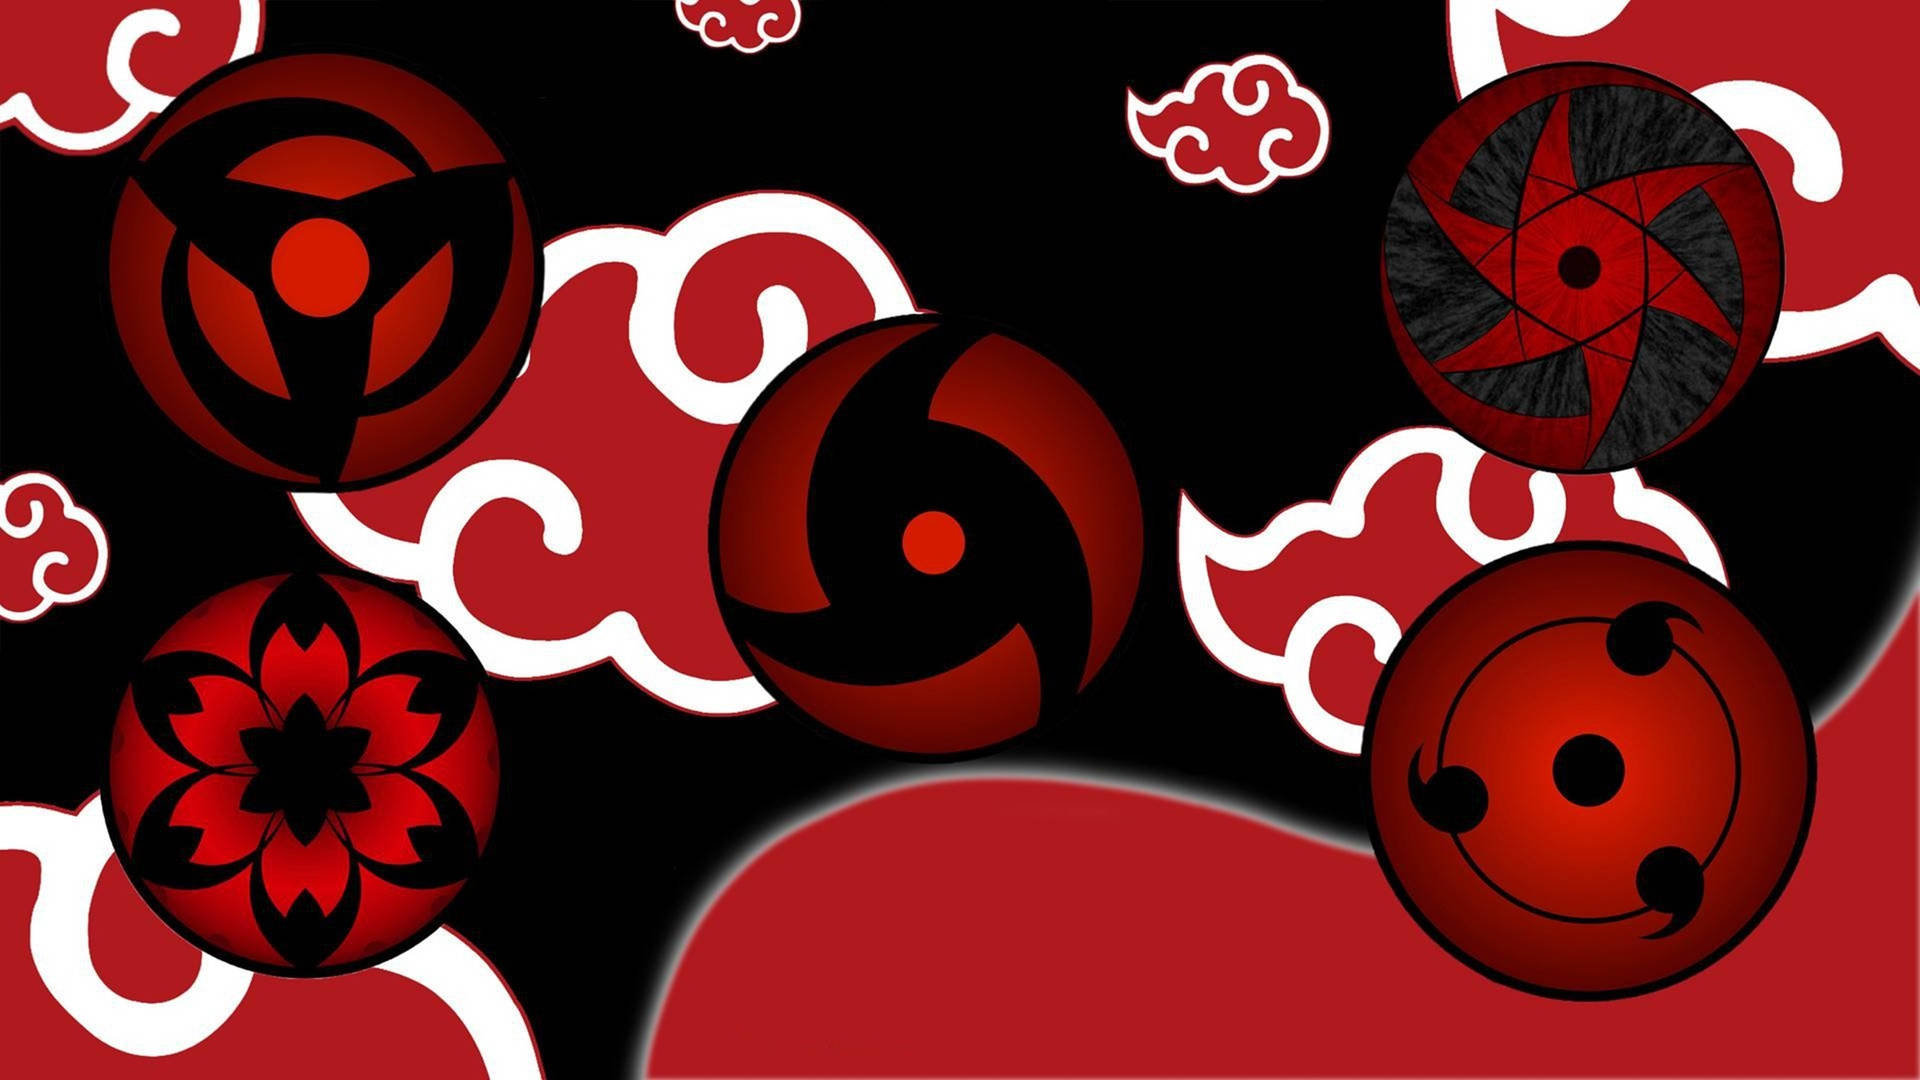 Akatsuki Logo Sharingan Eye Patterns Background